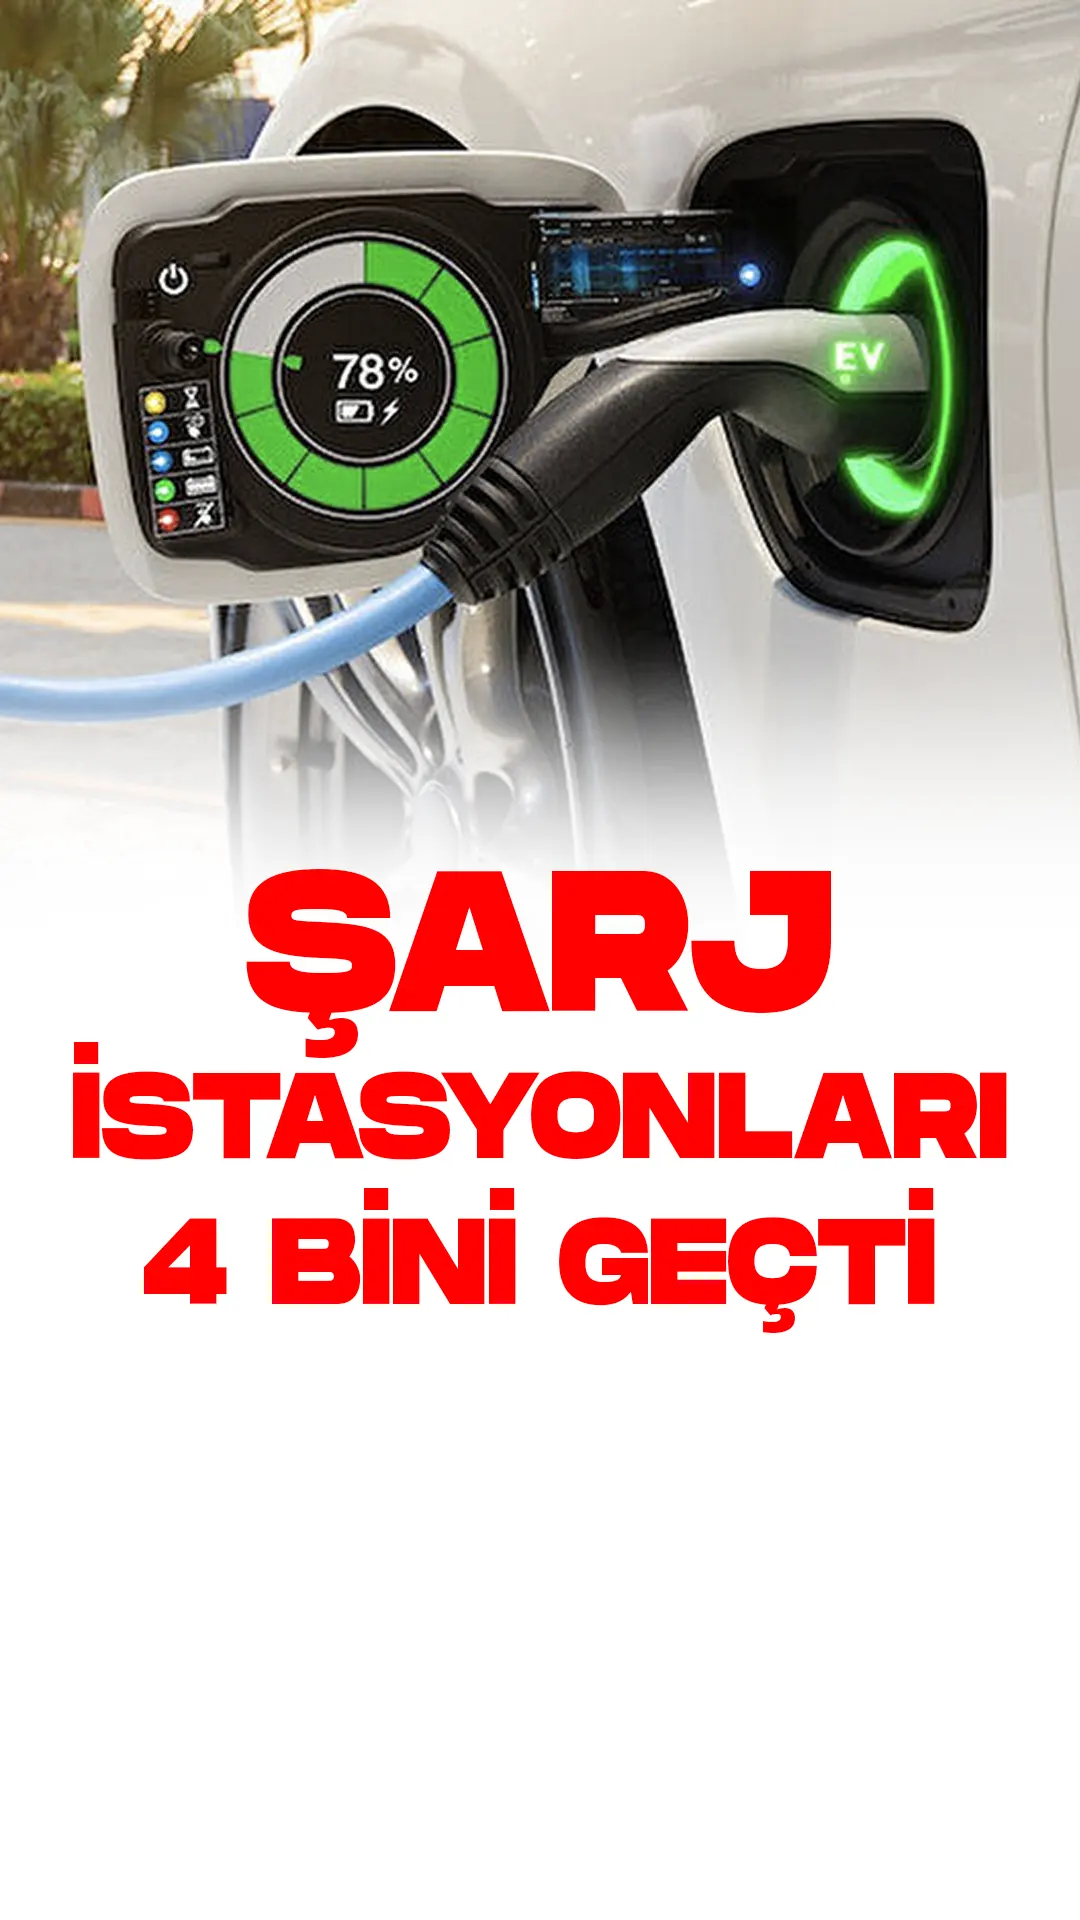 Türkiye'de Elektrikli Araç Şarj İstasyonu Sayısı 4 Bini Geçti.Türkiye'nin Elektrikli Araç Piyasası hızla gelişiyor. Türkiye'deki 4,498 elektrikli araç şarj noktasından bahseden Enerji Piyasası Düzenleme Kurumu Başkanı Mustafa Yılmaz, 124 şirketin şarj istasyonu kurmak için lisans aldığını söyledi.